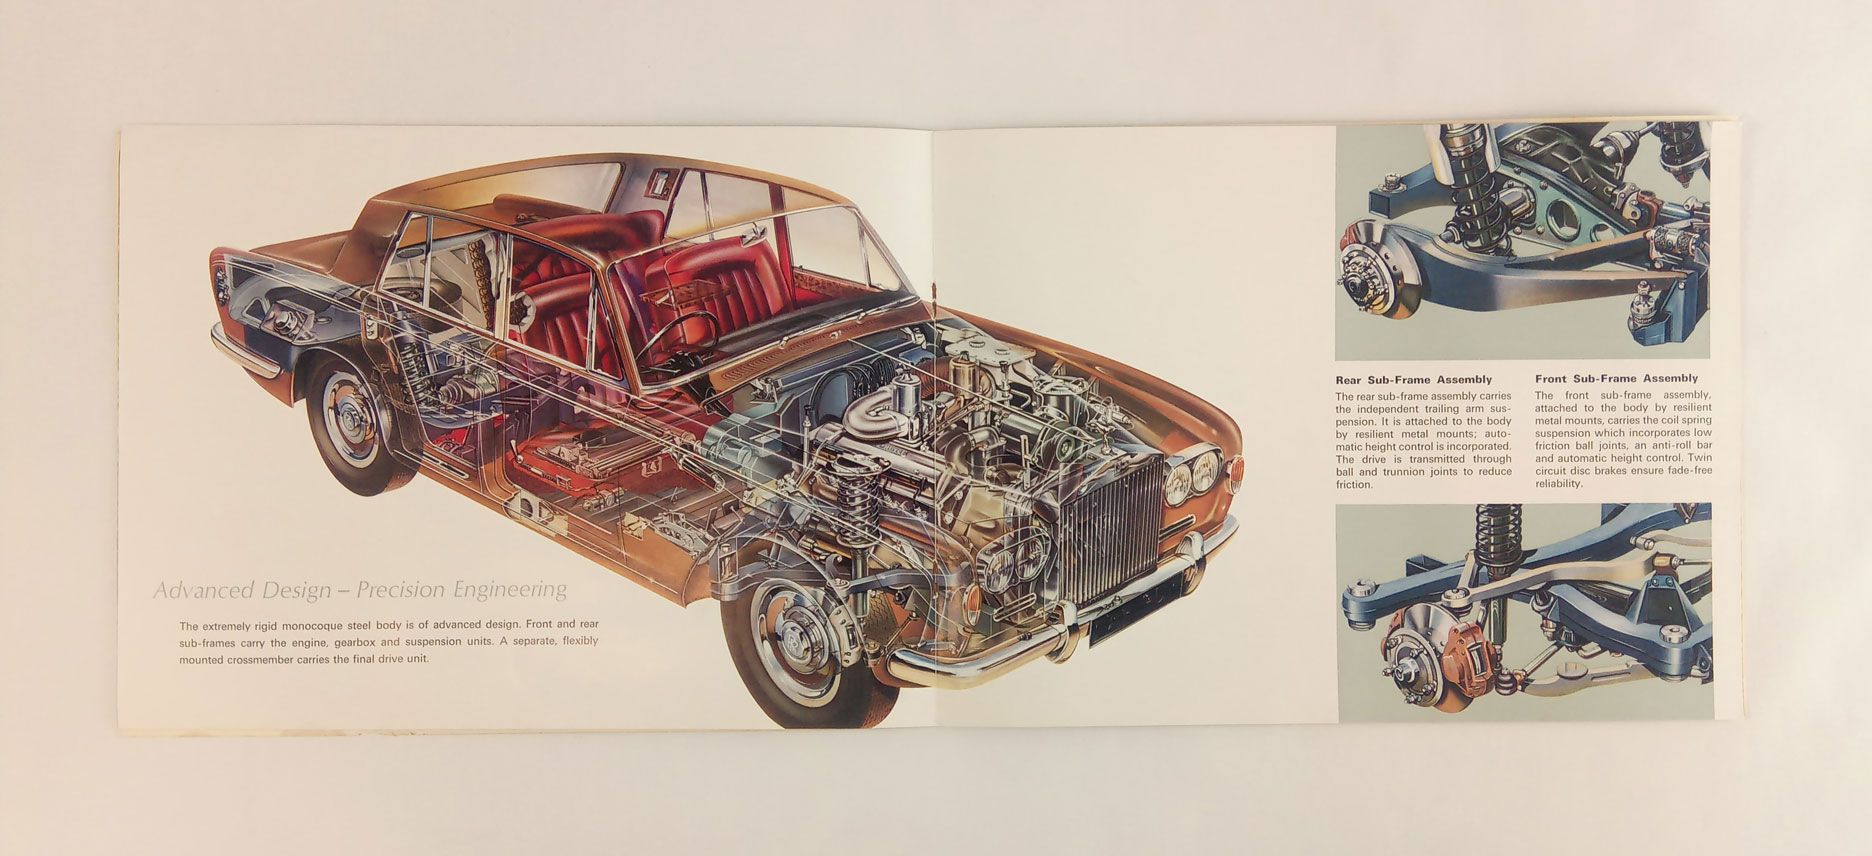 Rolls-Royce "Silver Shadow and Bentley "T Series" sales brochure, printed 1965